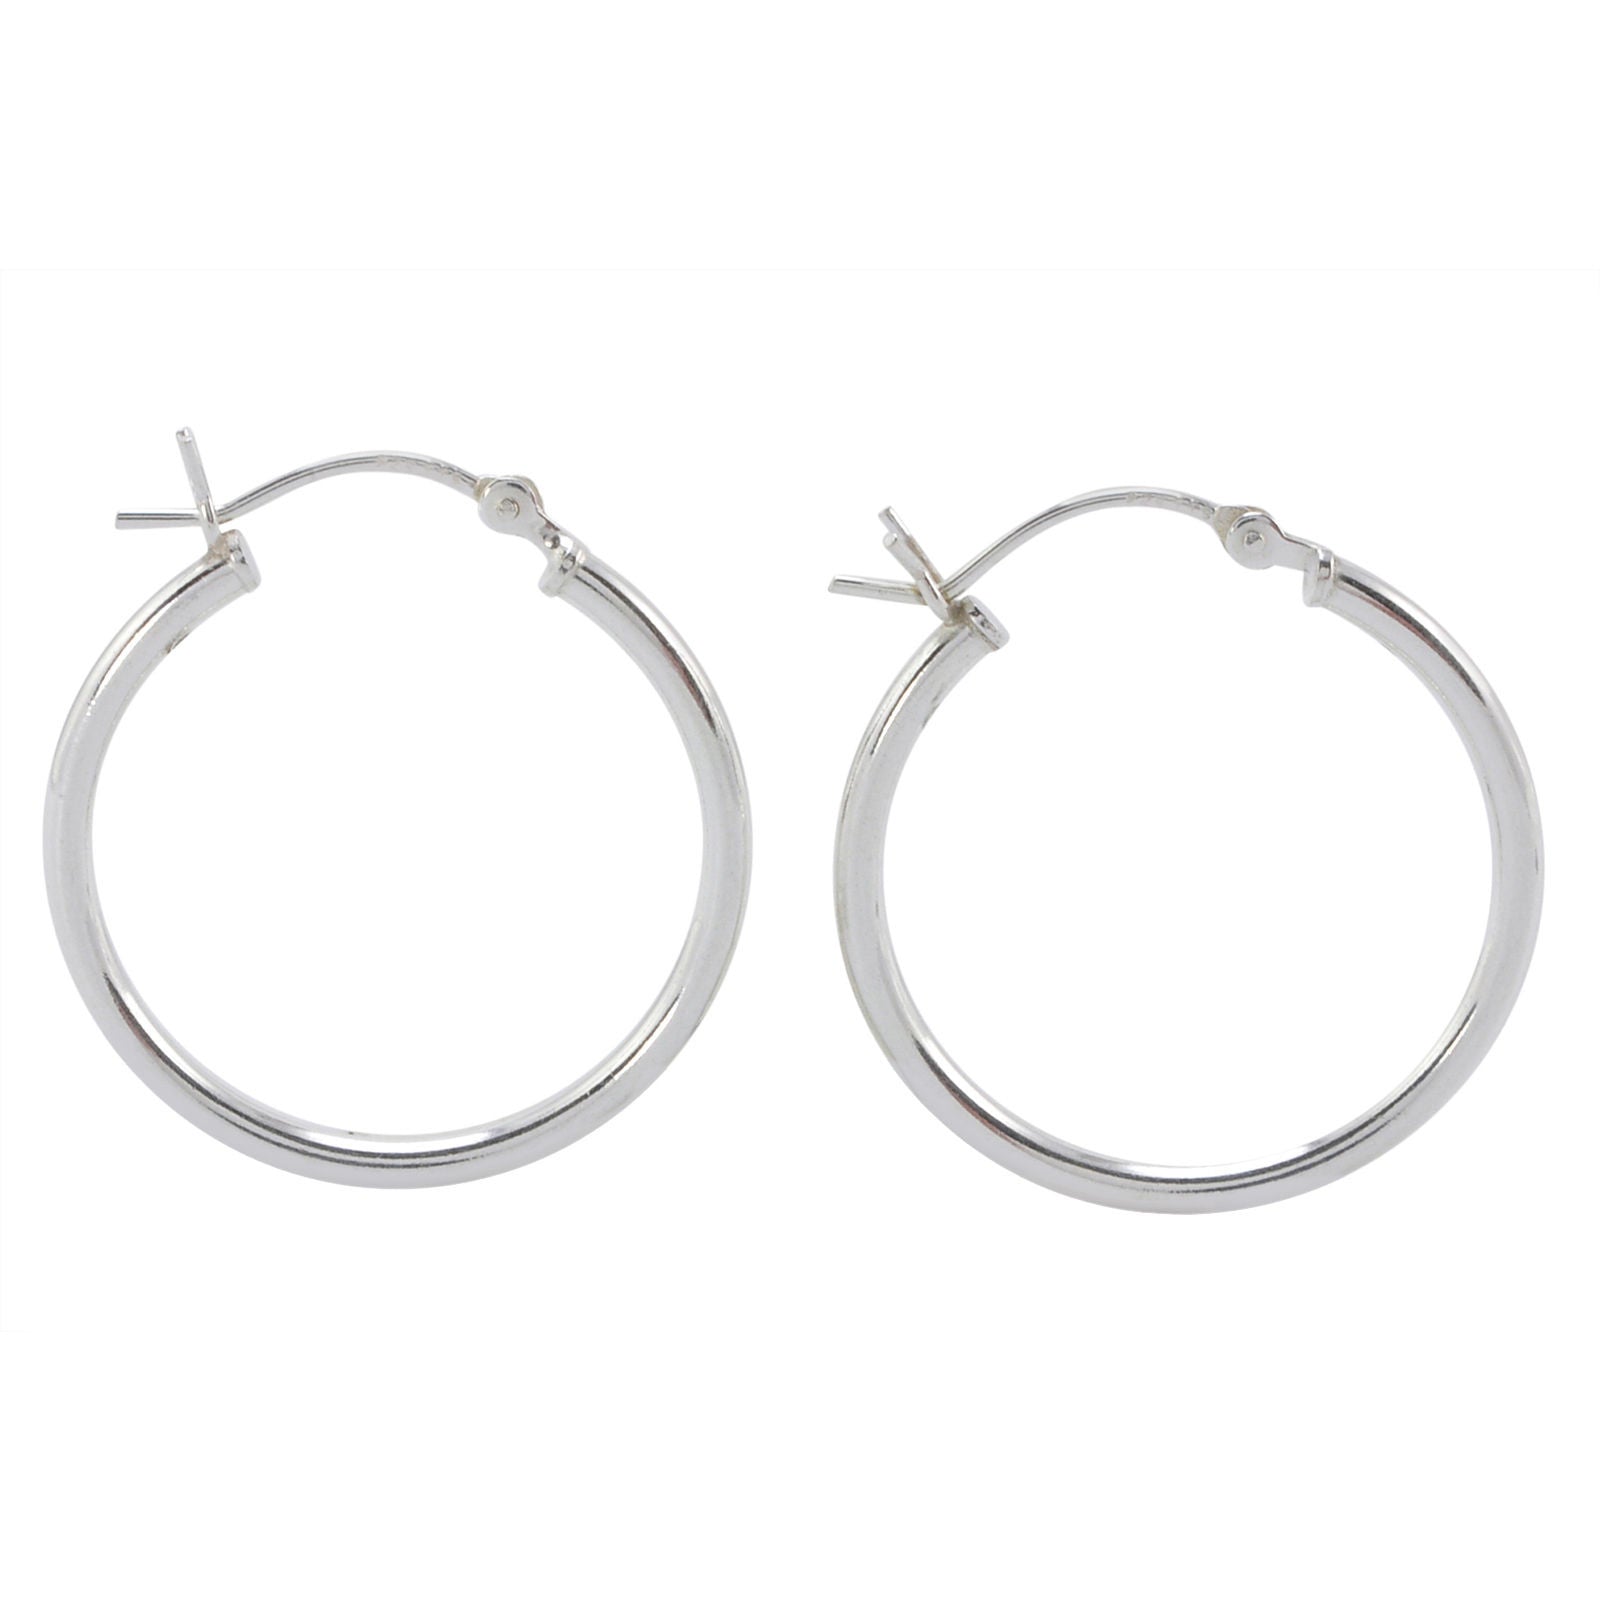 Sterling Silver 25mm Hoop Earrings Latch Closure | Jewelryland.com